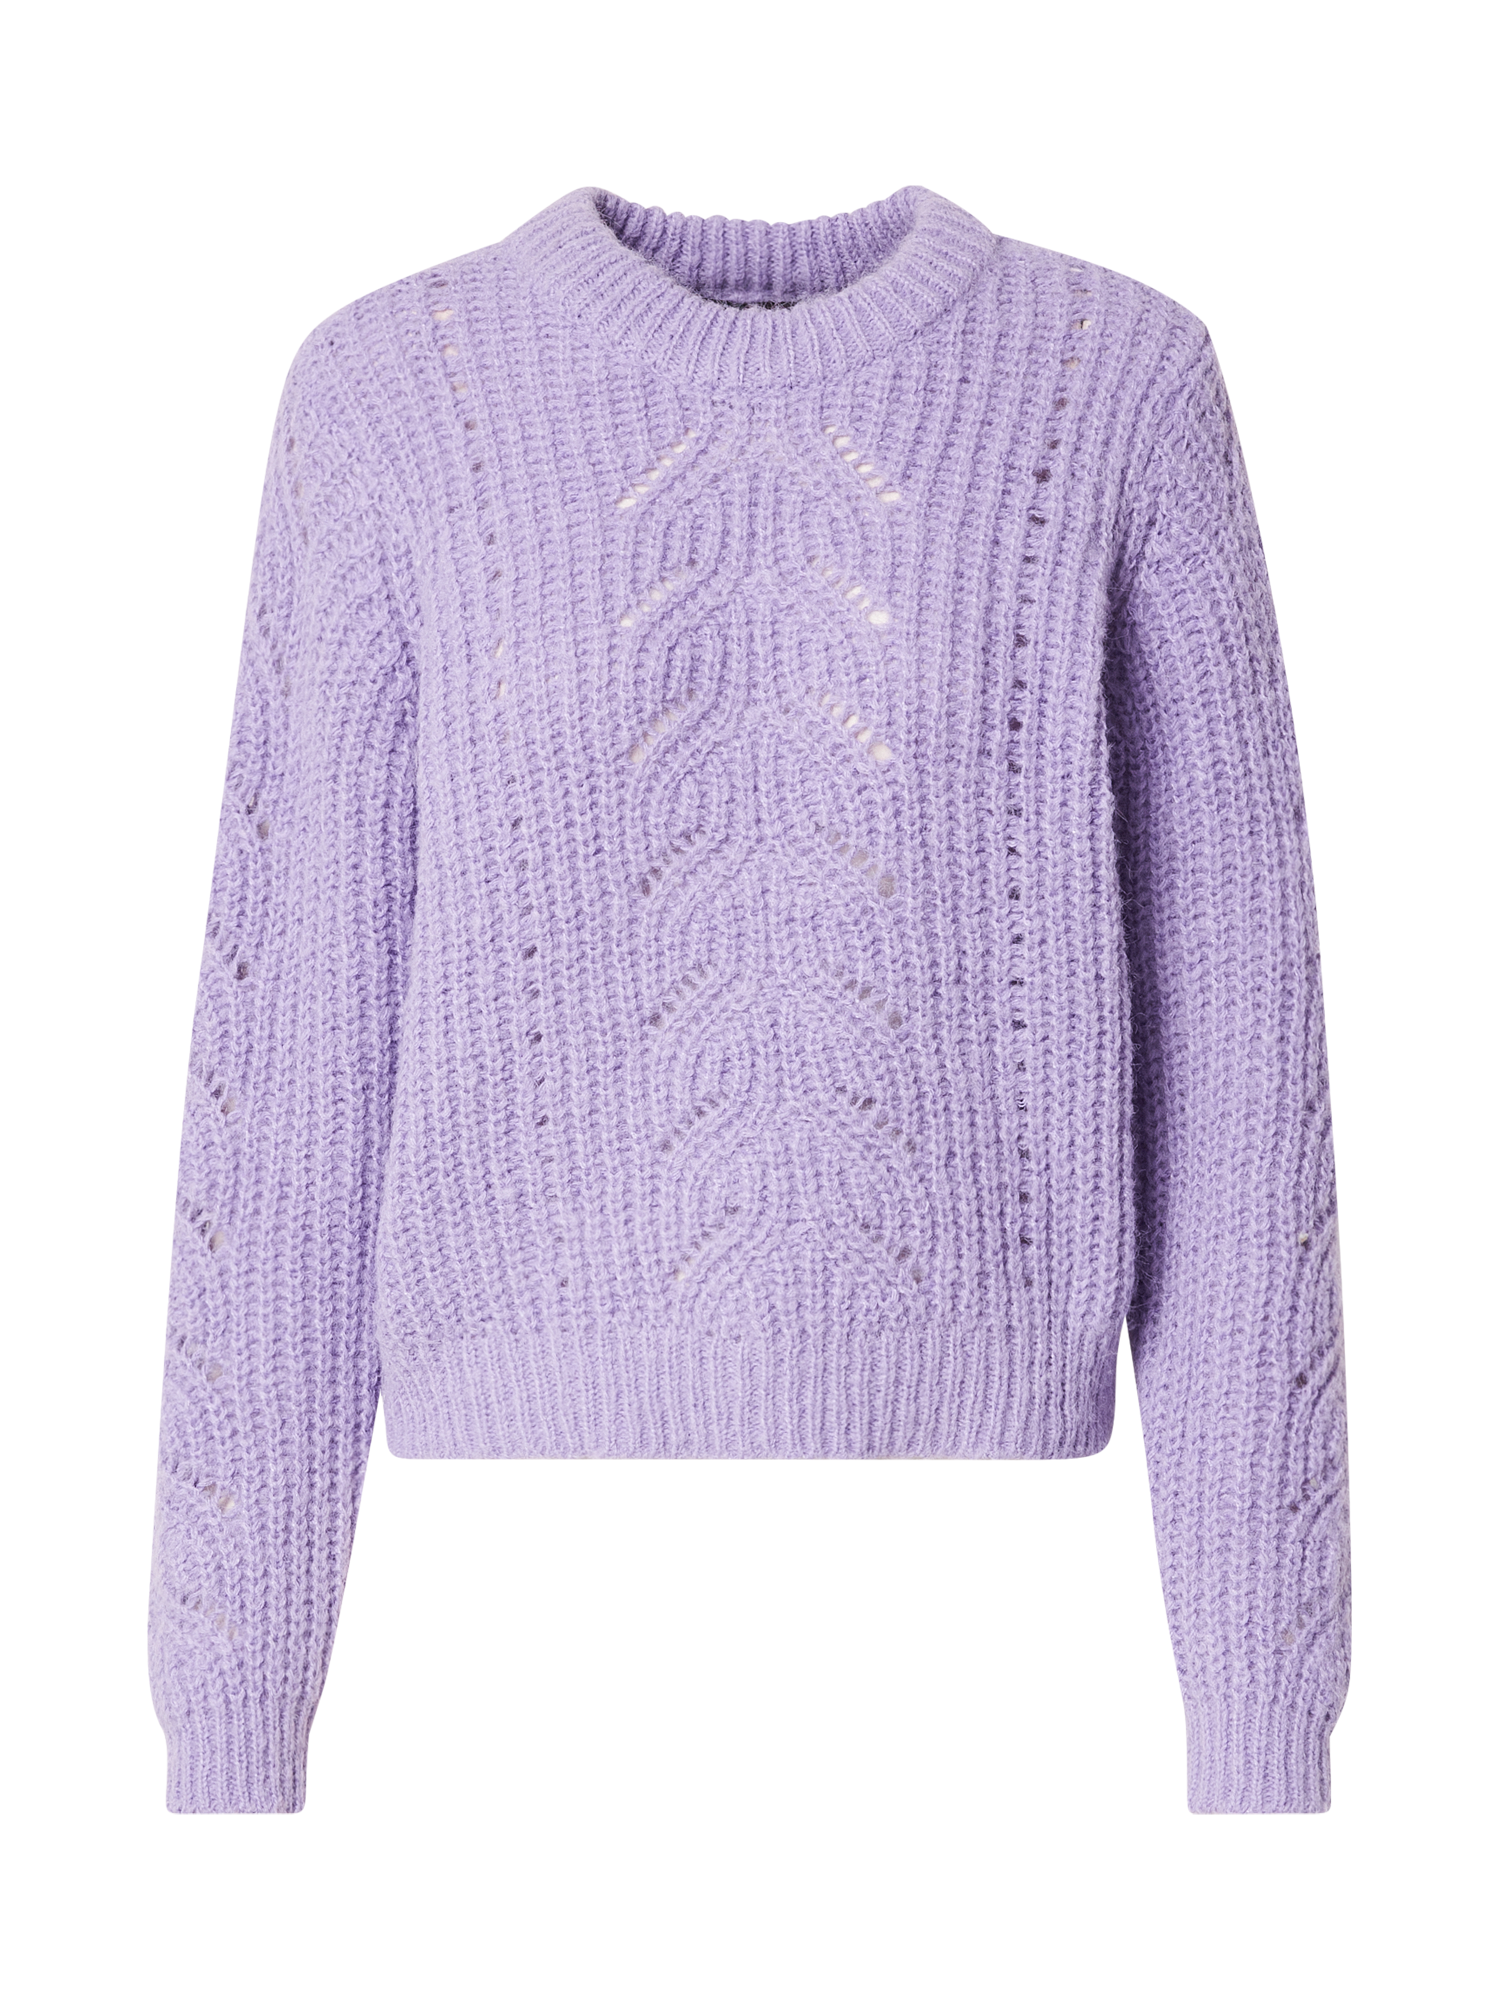 Odzież Swetry & dzianina PIECES Sweter KASSANDRA w kolorze Liliowym 